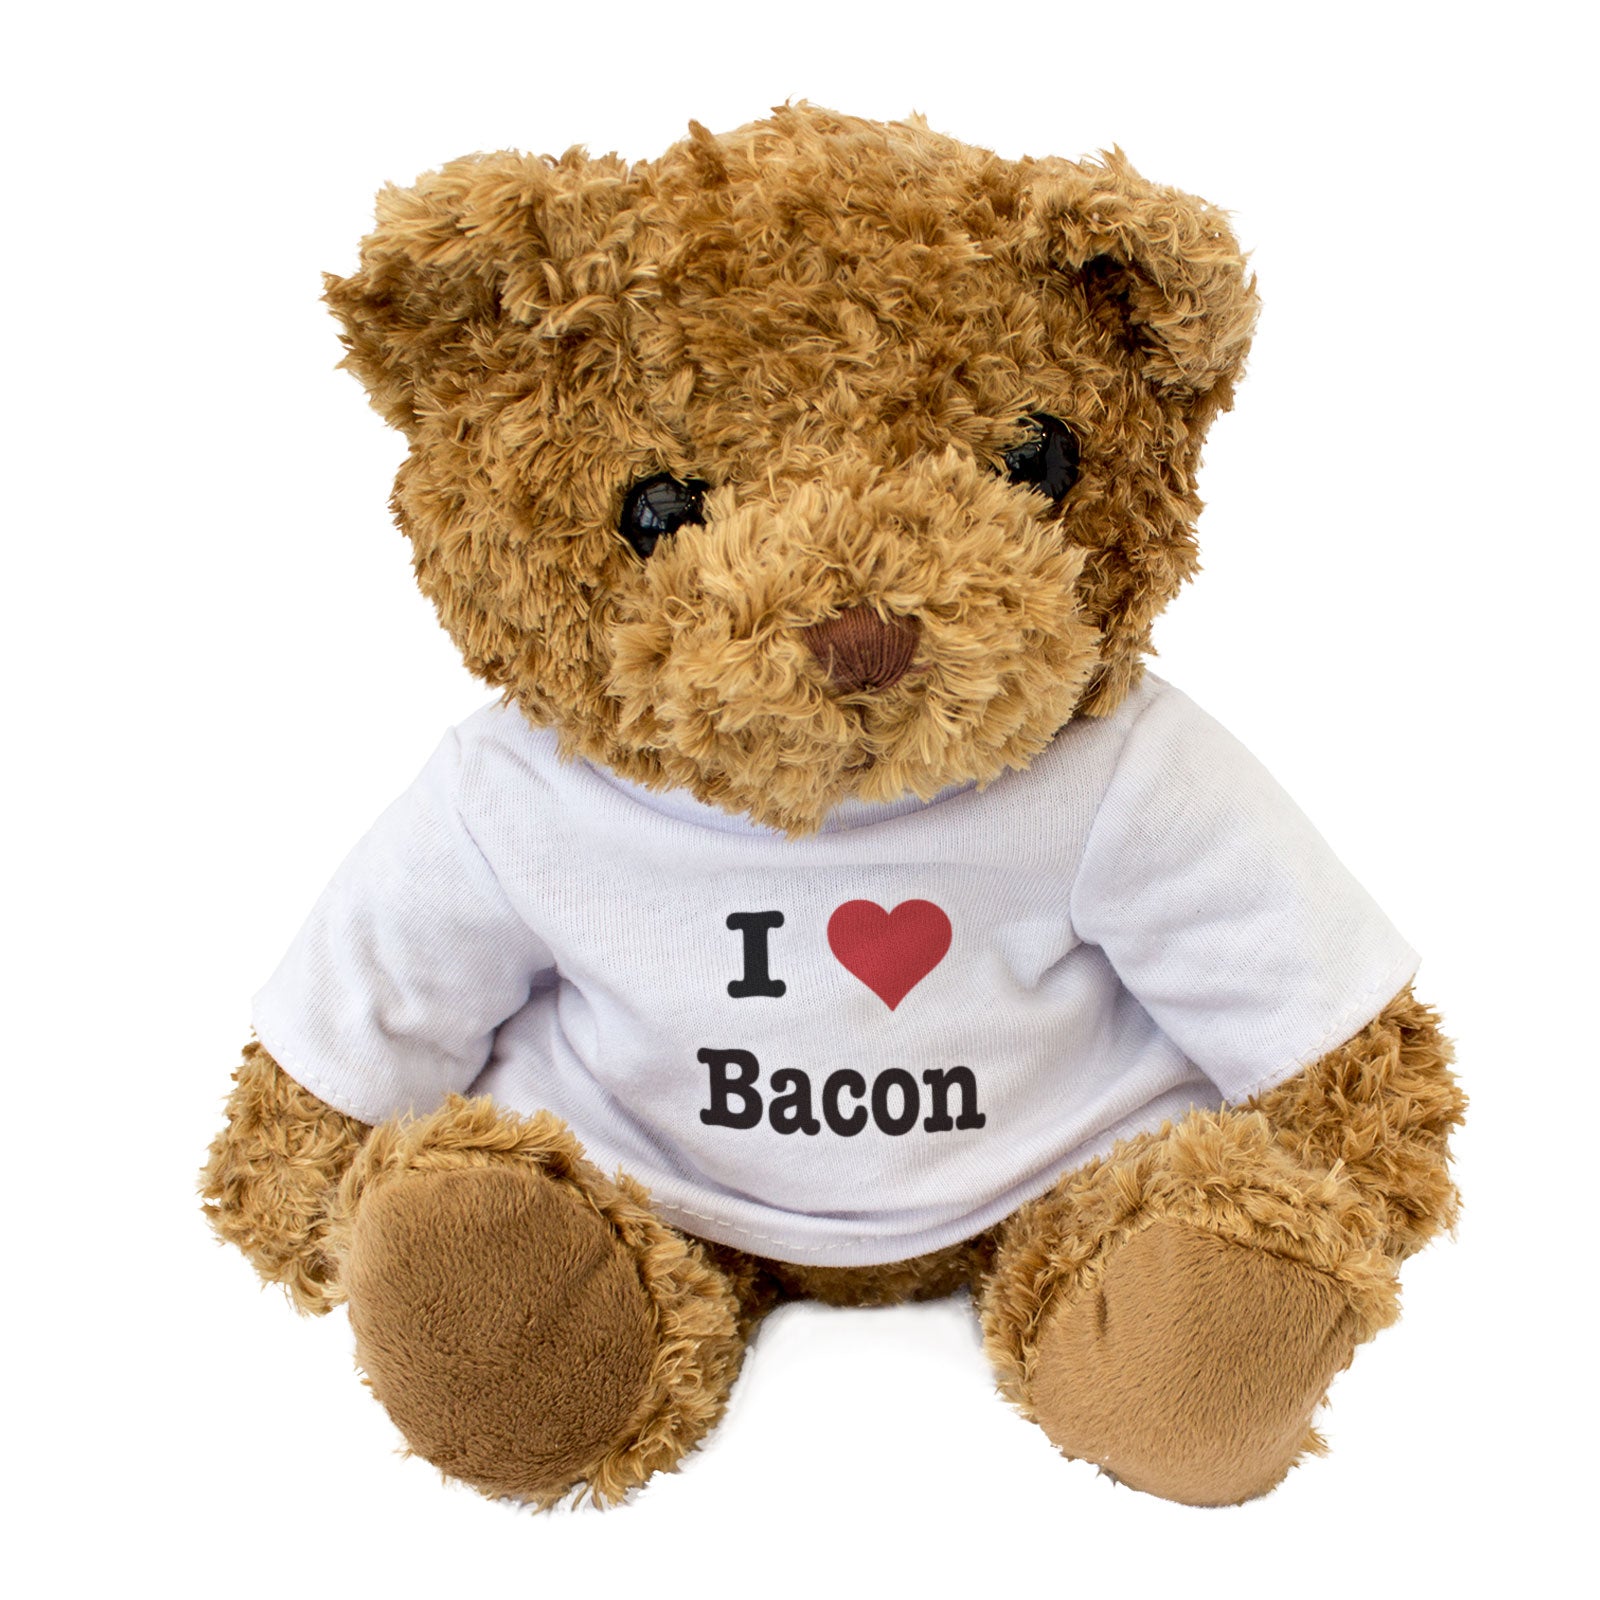 I Love Bacon - Teddy Bear